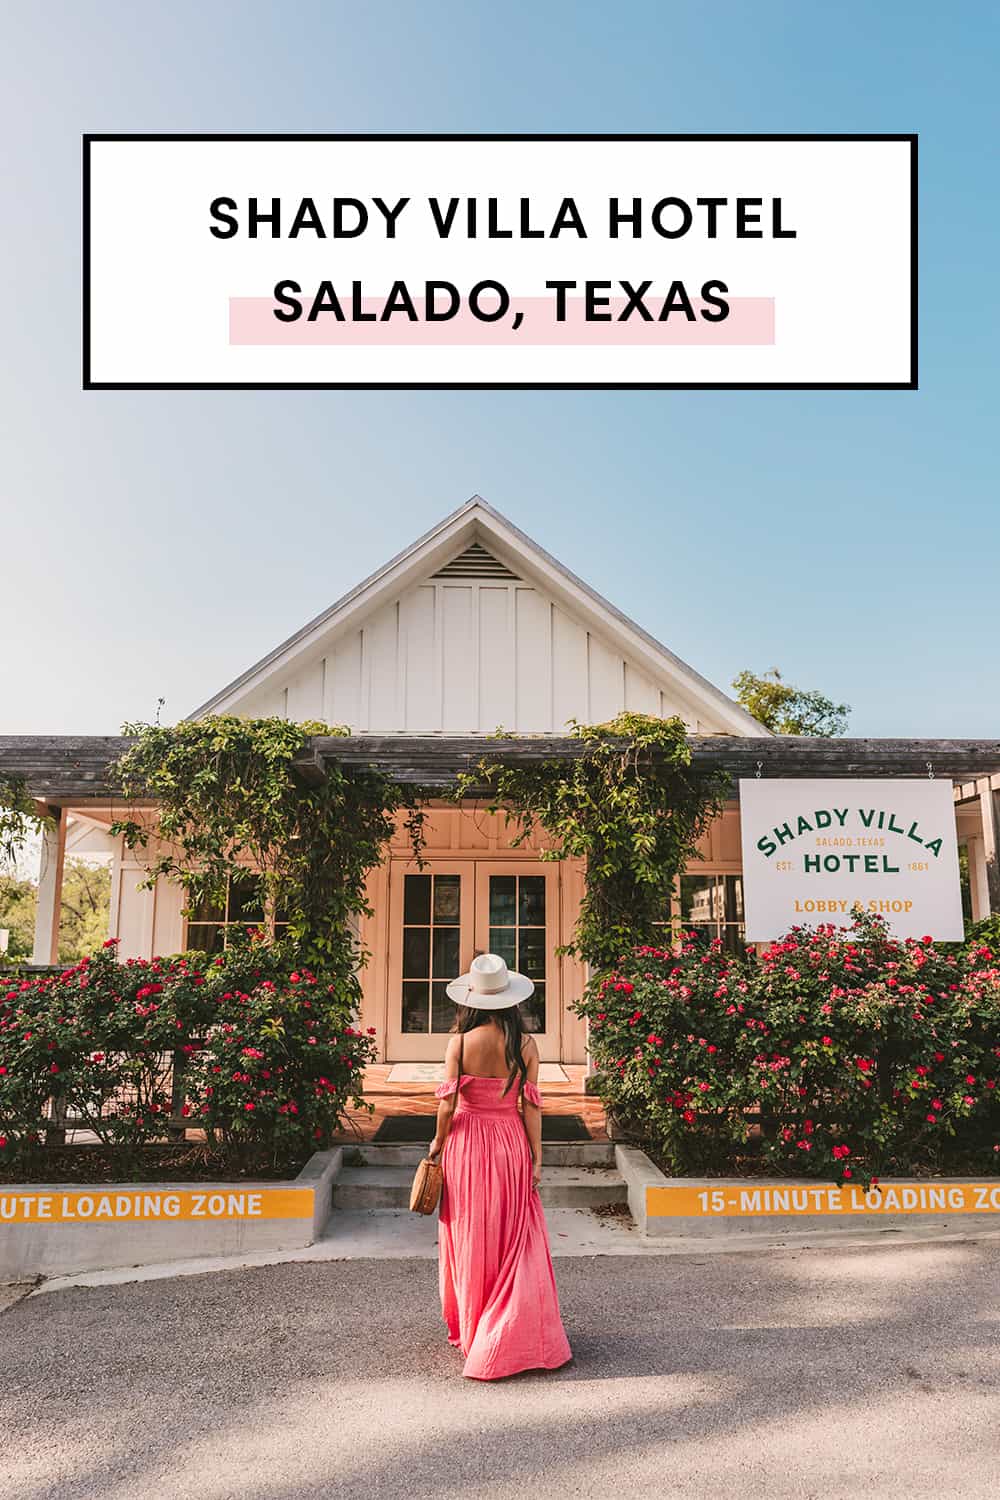 Shady Villa Hotel in Salado Texas